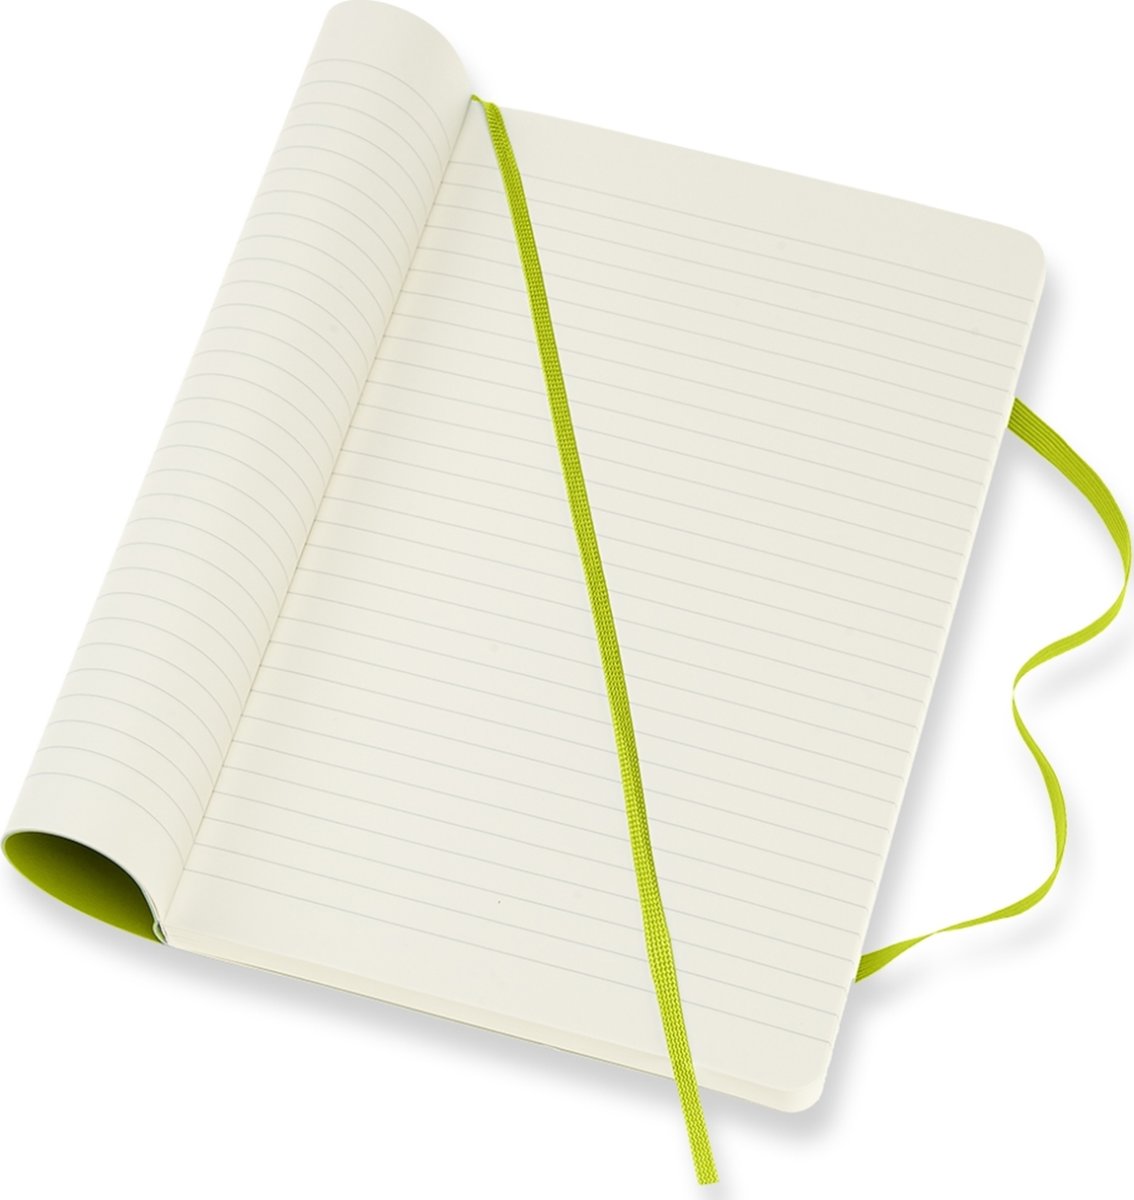 Moleskine Clas. S Notesbog | L | Linj. | L.grøn